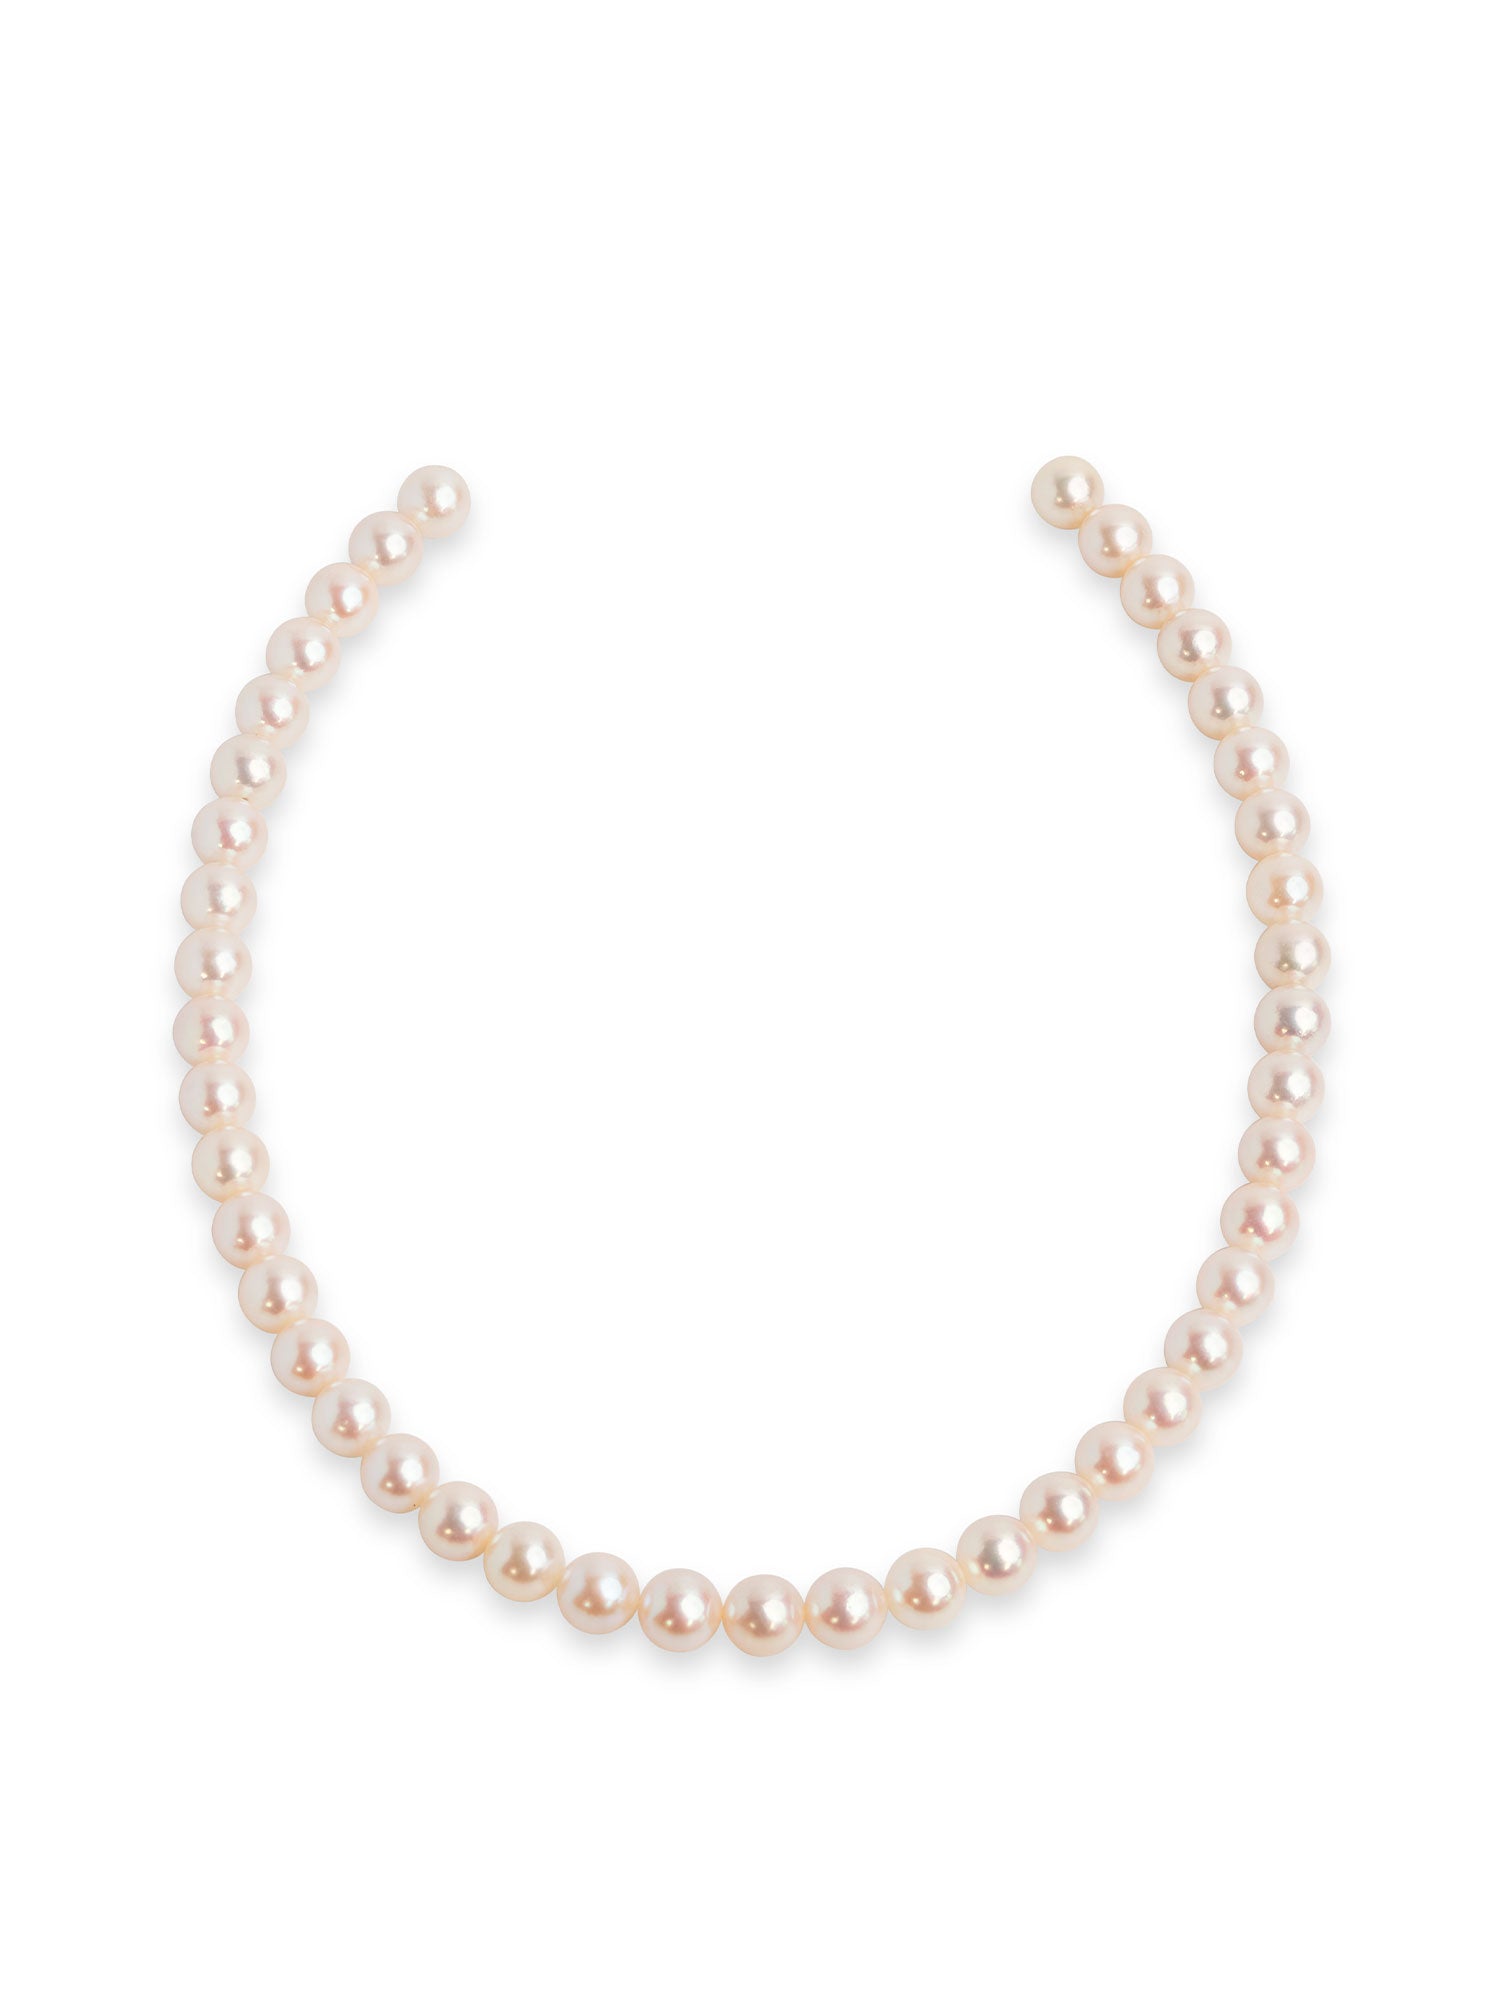 Collar de perlas cultivadas Akoya de Japón de 7-7,5 mm